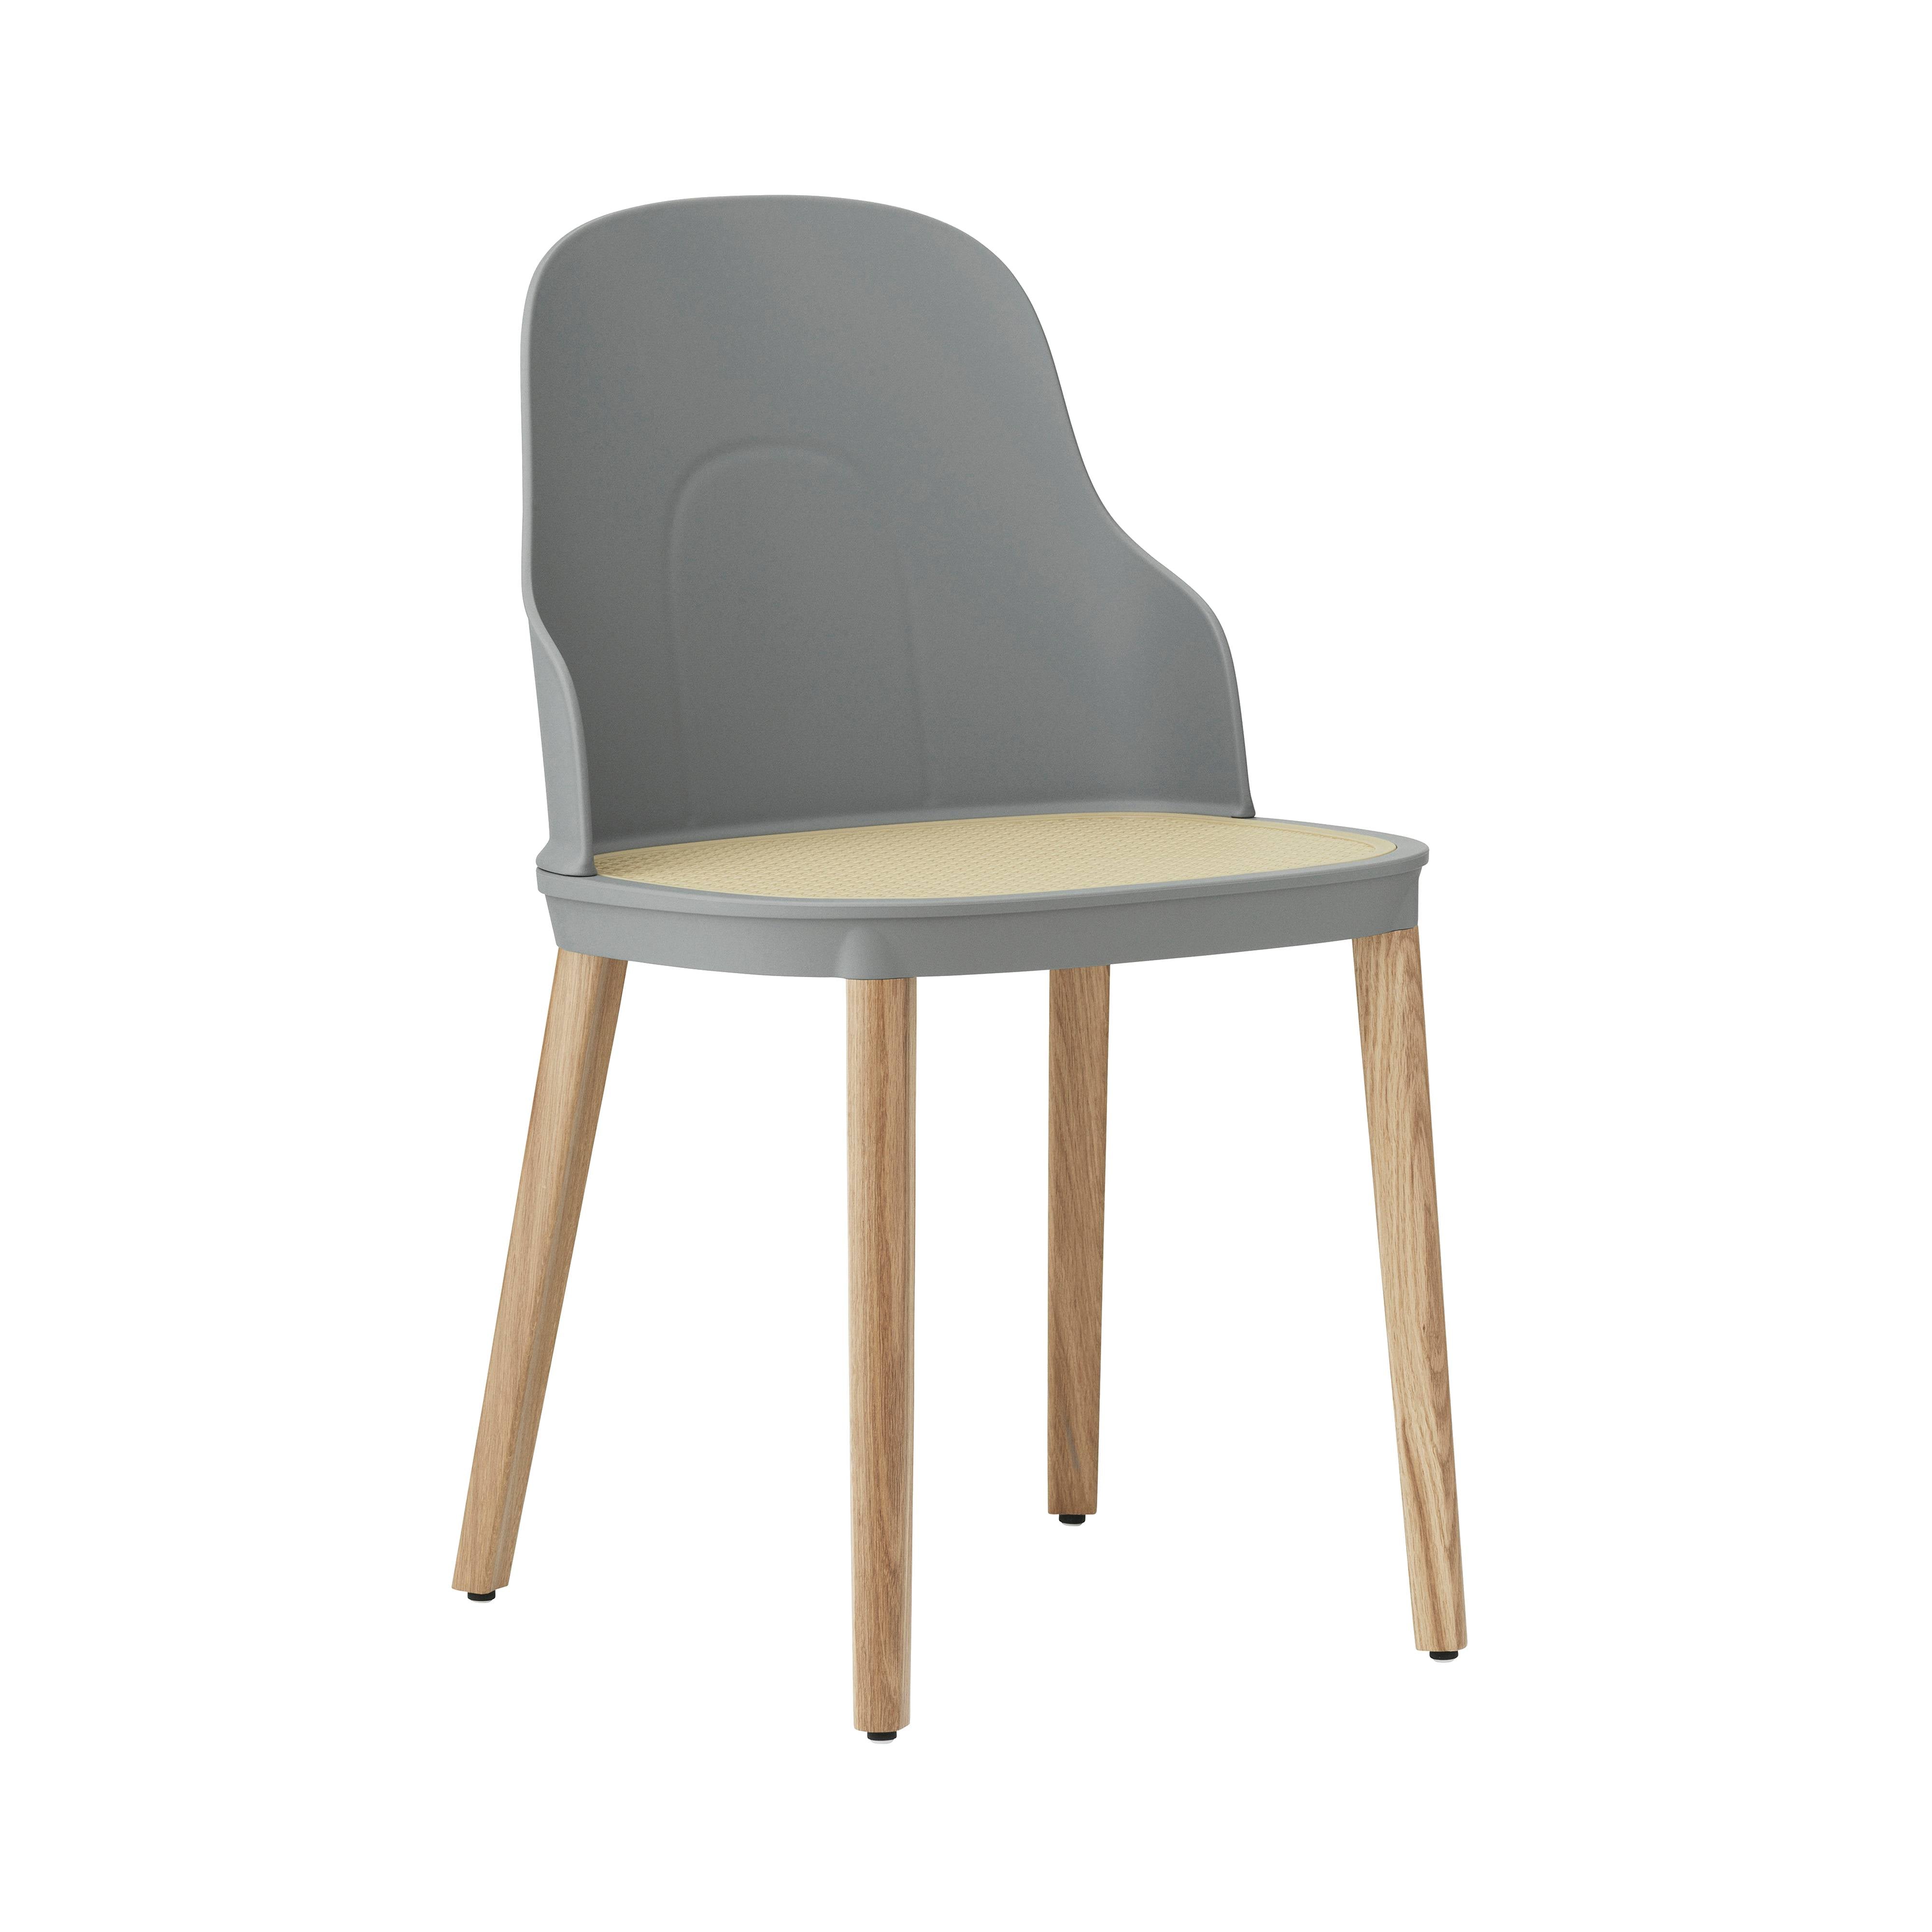 Allez Chair: Molded Wicker + Grey + Oak